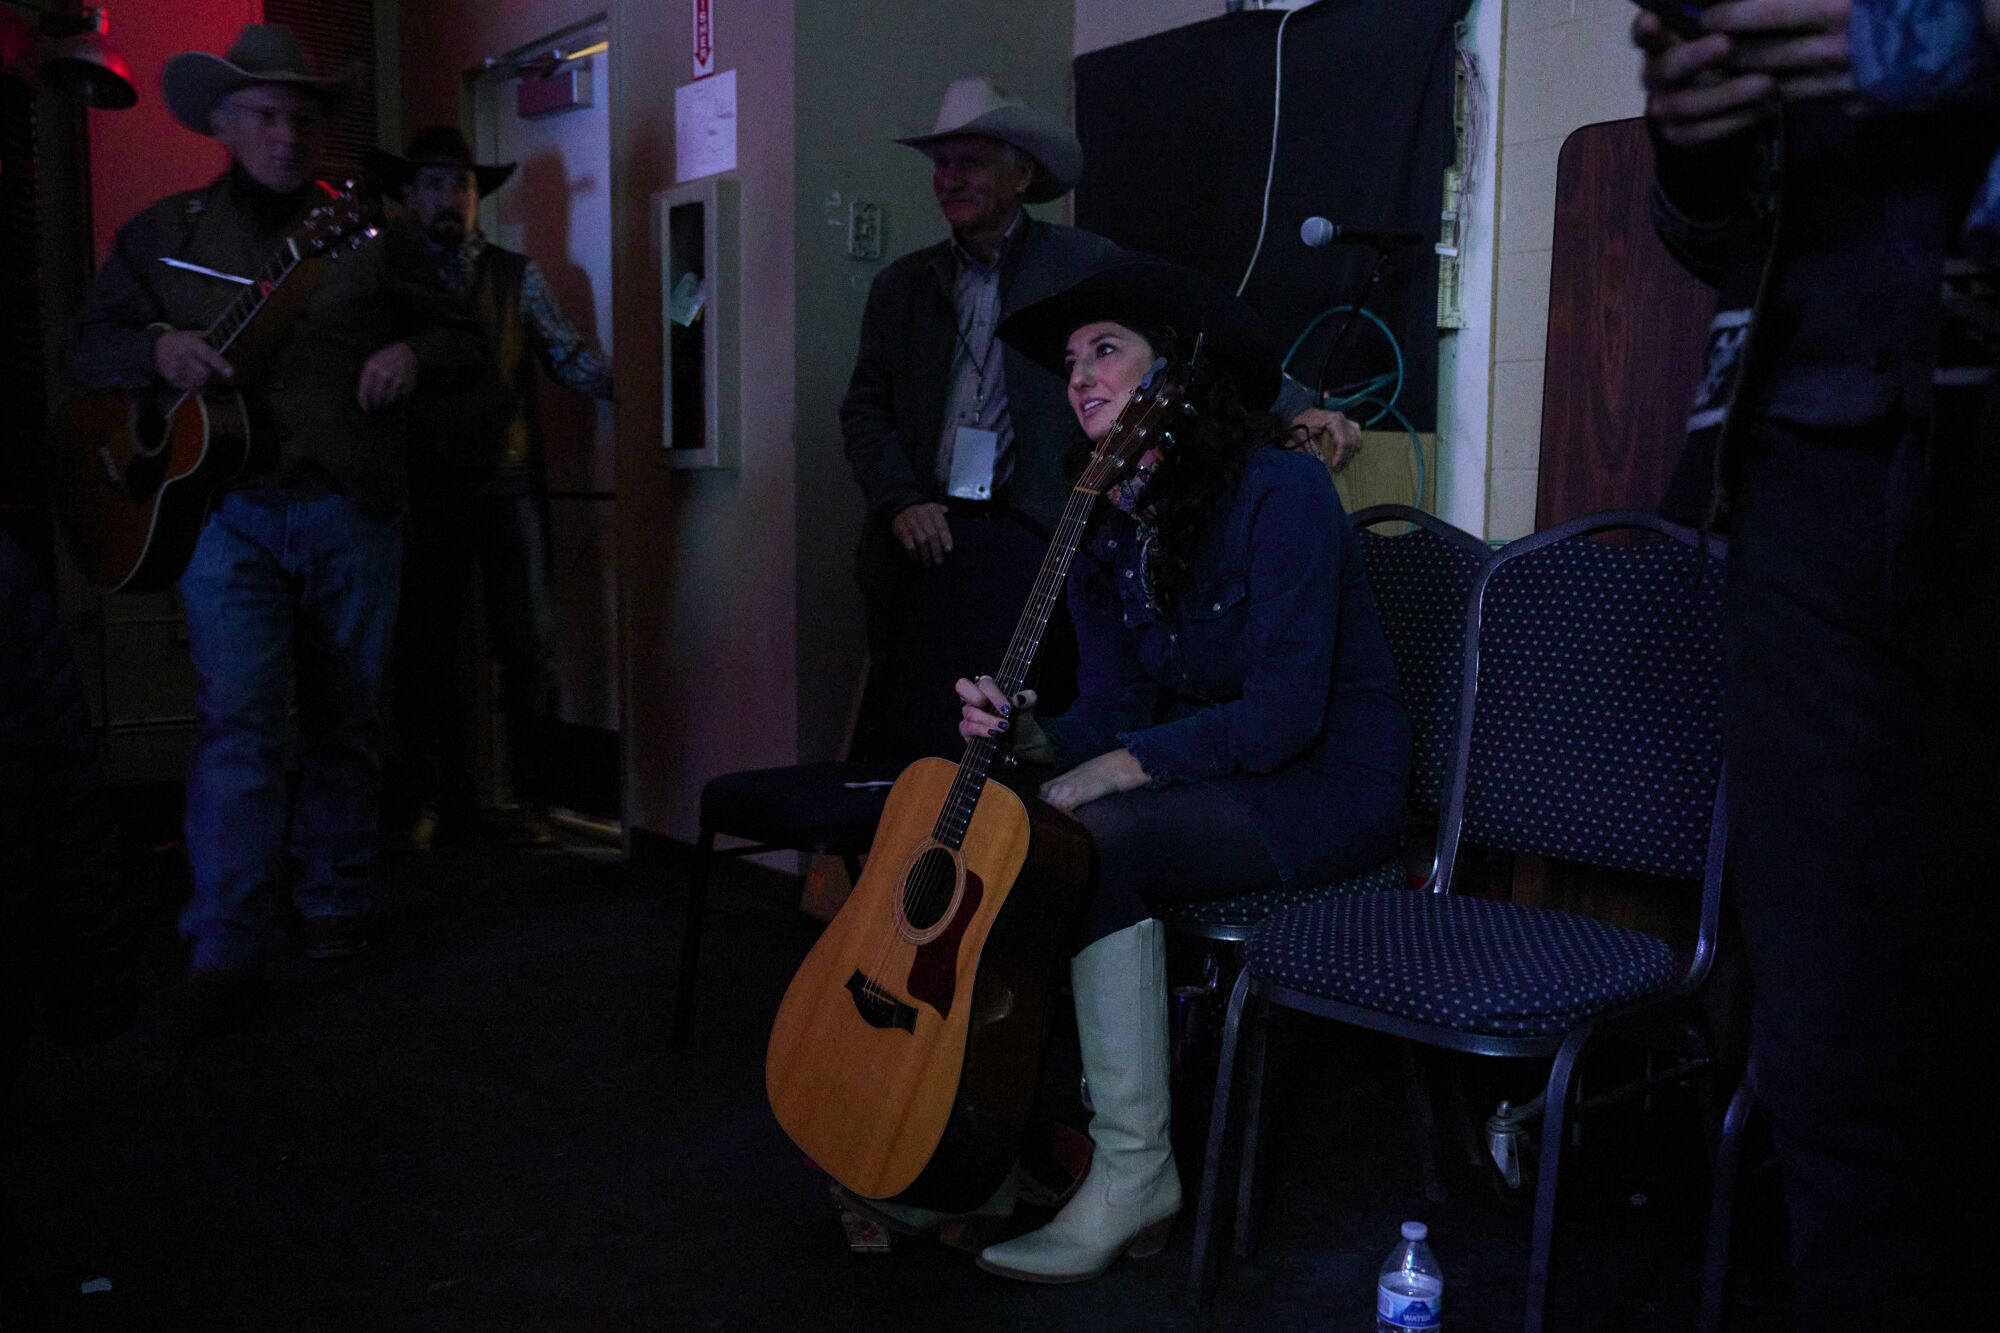 Jessie Veeder, Ulusal Kovboy Şiir Buluşması sırasında performans sergilemeden önce sahne arkasında bekliyor.